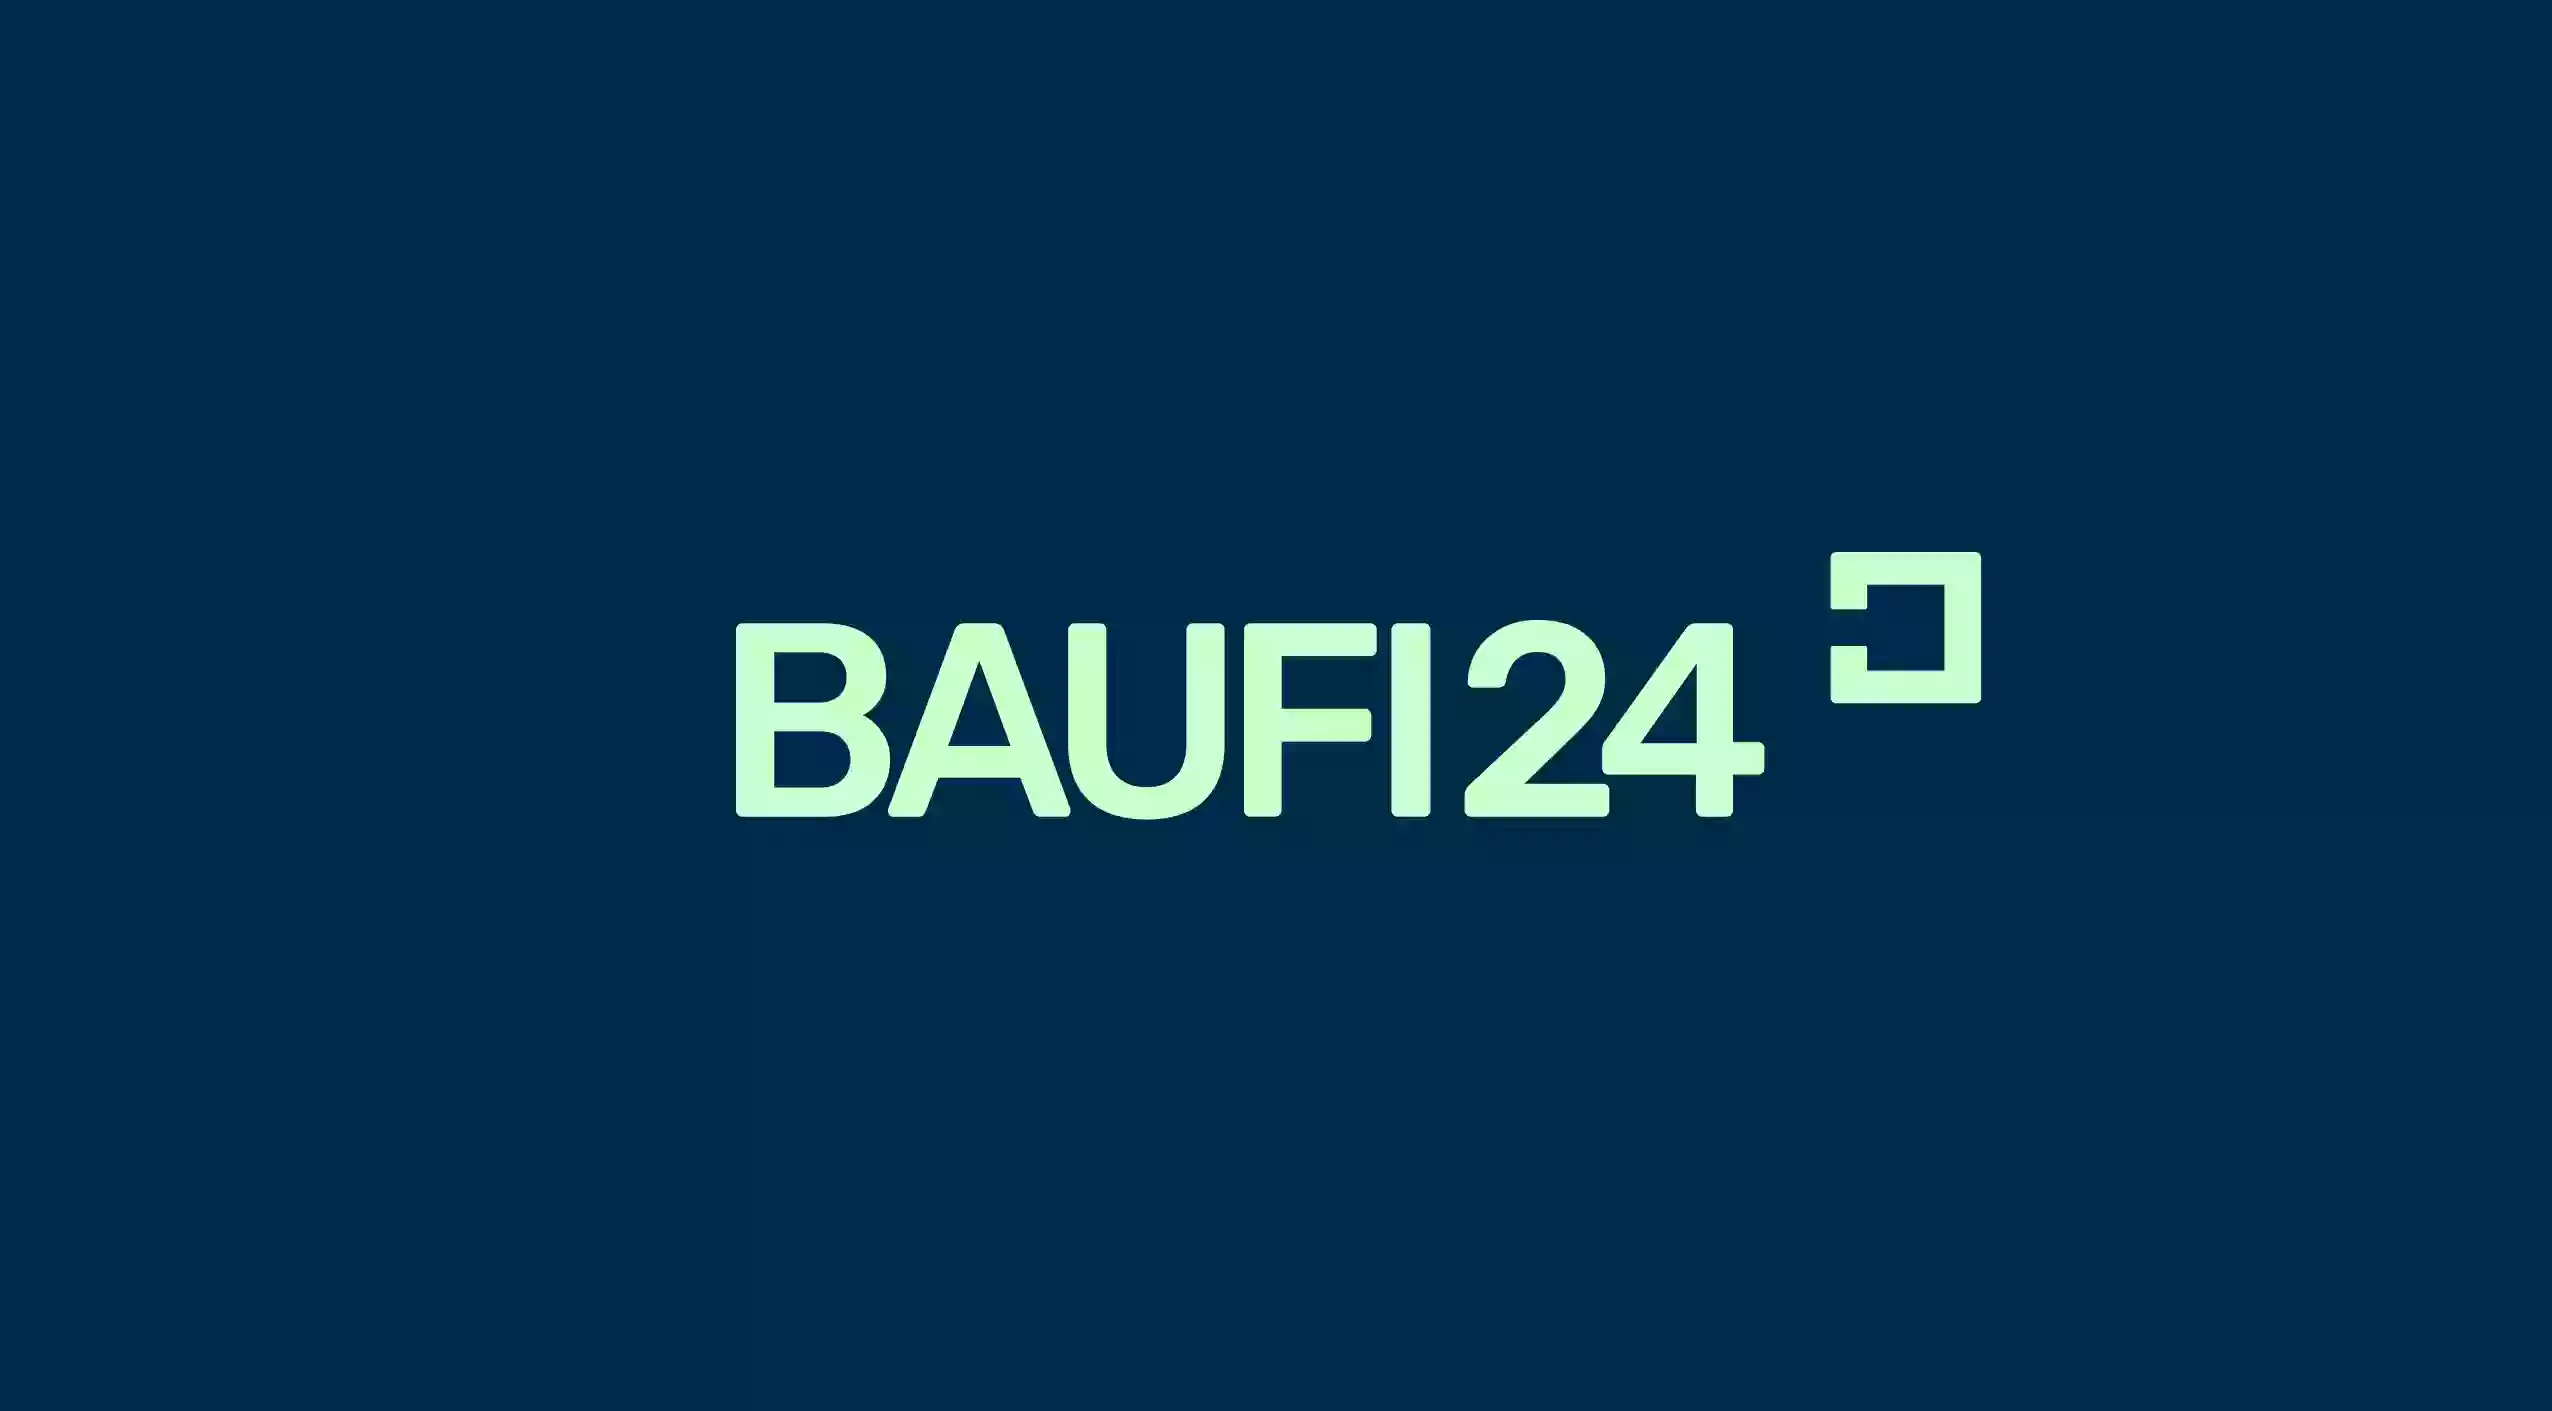 Baufi24 Baufinanzierung